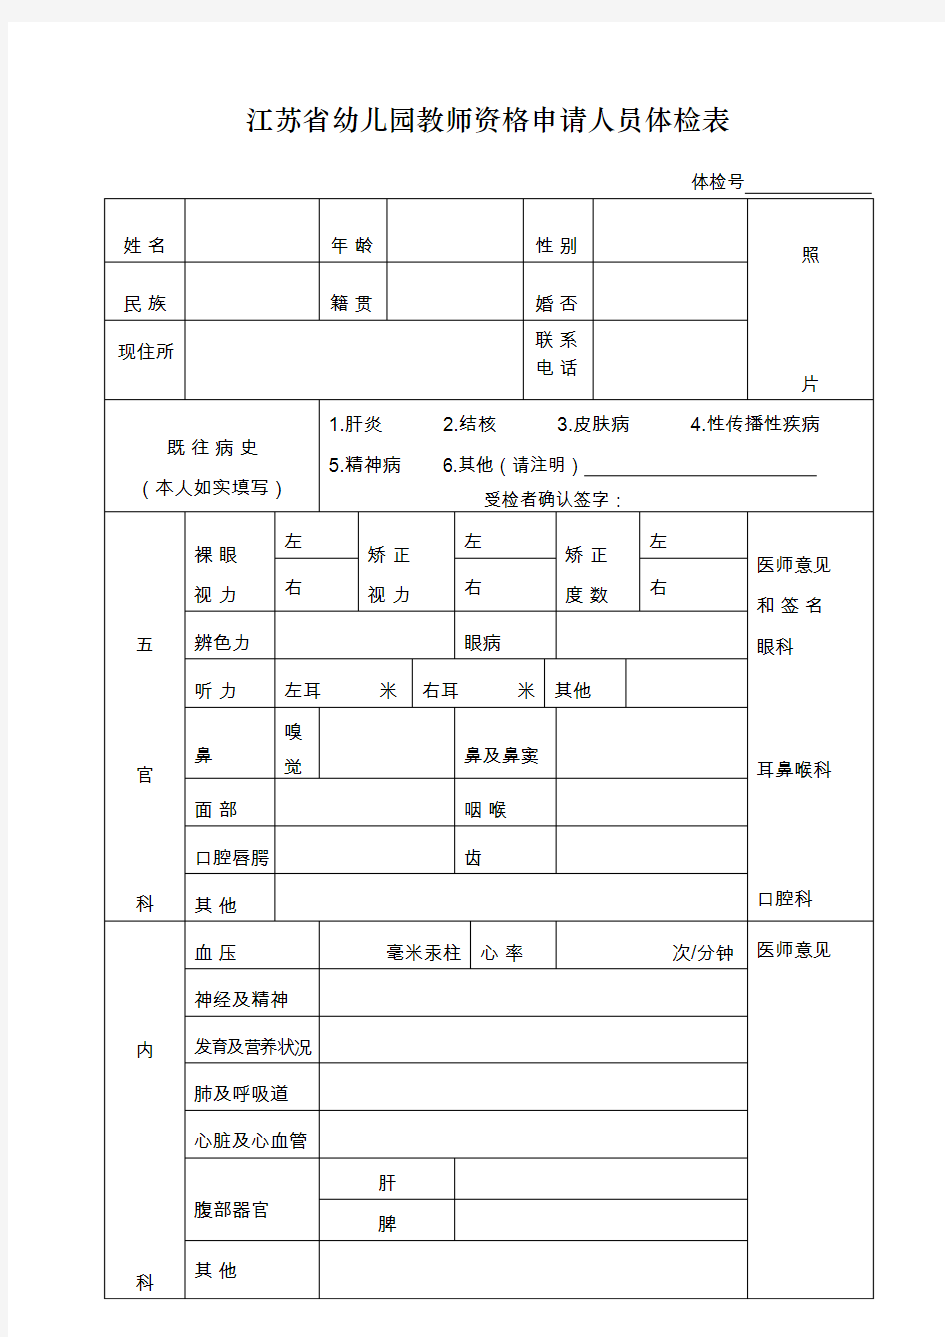 江苏幼儿园教师资格申请人员体检表